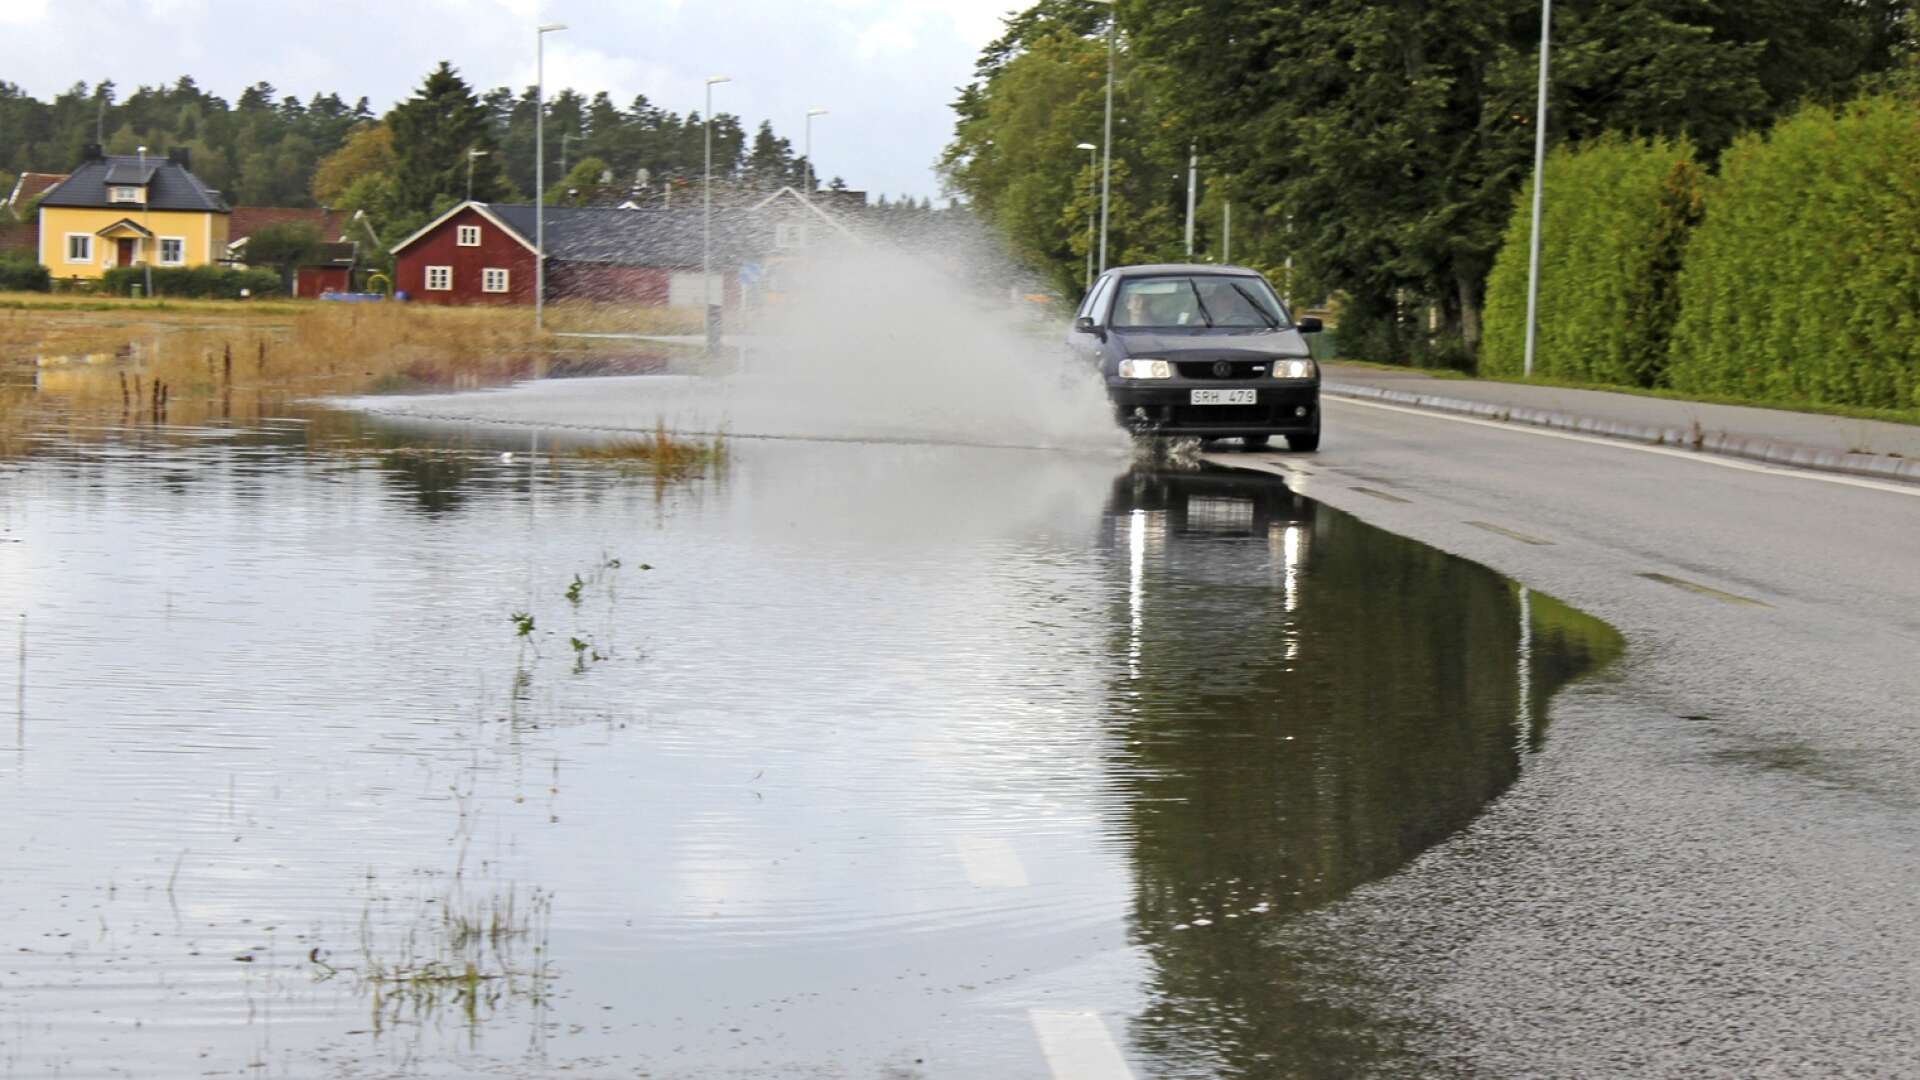 Tidigare har Främmestad varit utsatt så fort det blivit riklig nederbörd. Bilden är från översvämning i Främmestad 2014. 